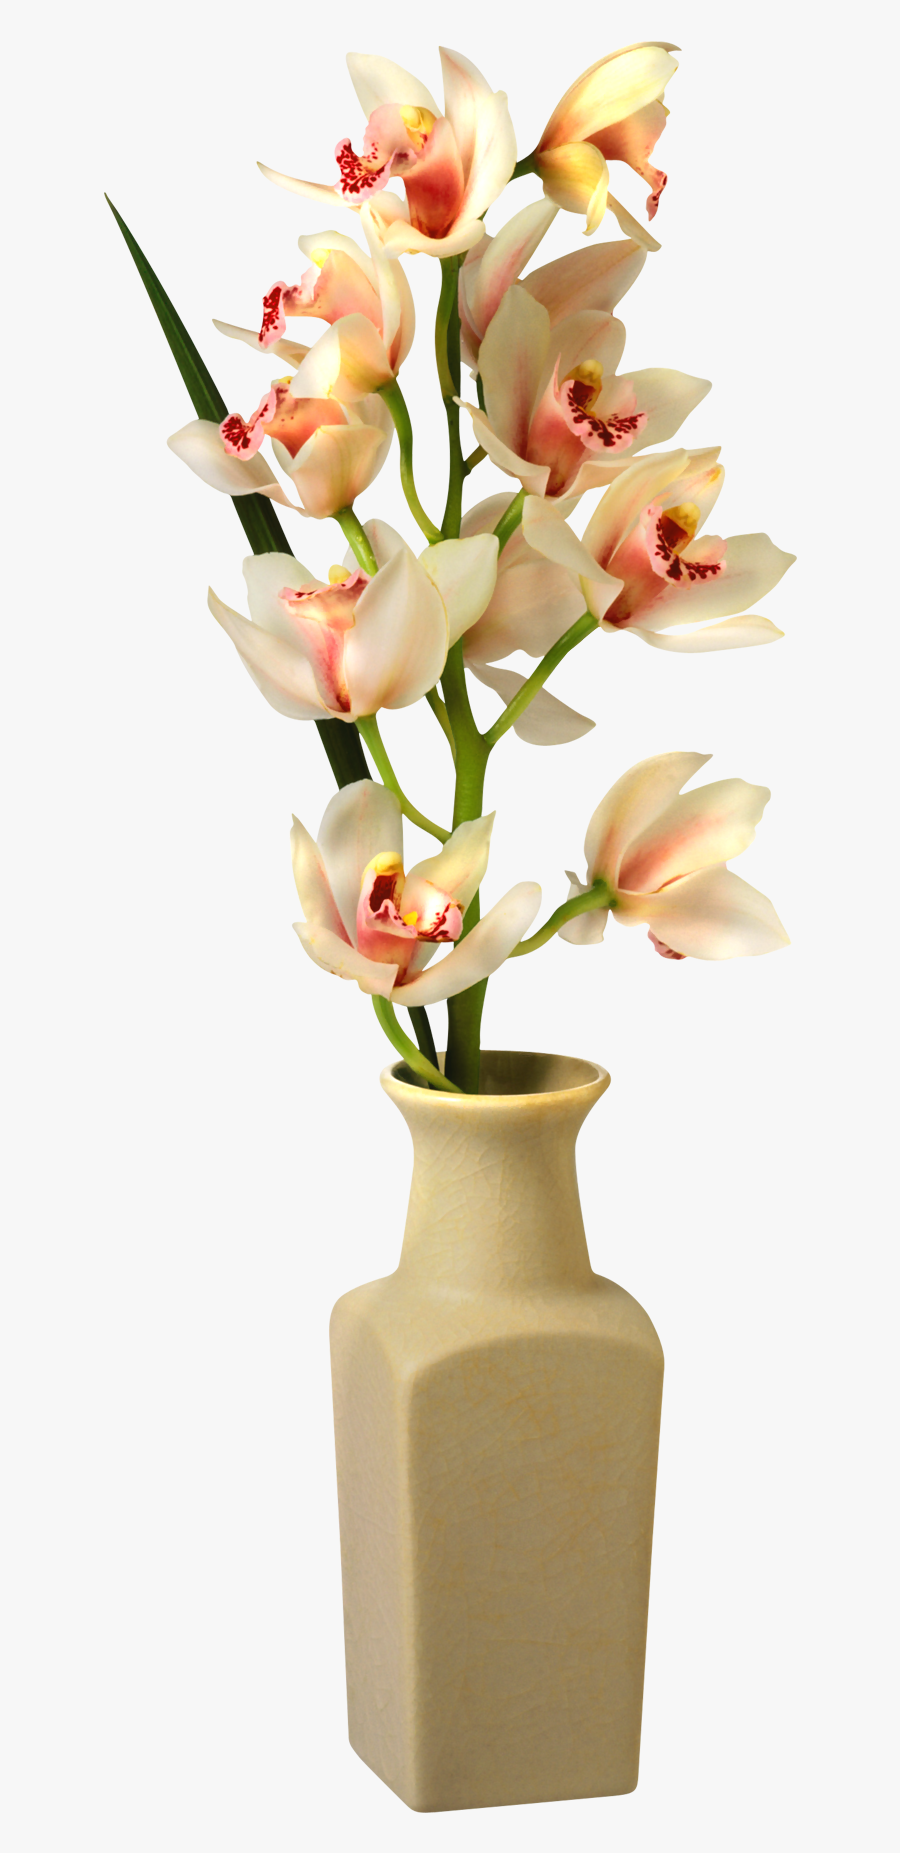 Vase Png Transparent Flower Vase, Transparent Clipart